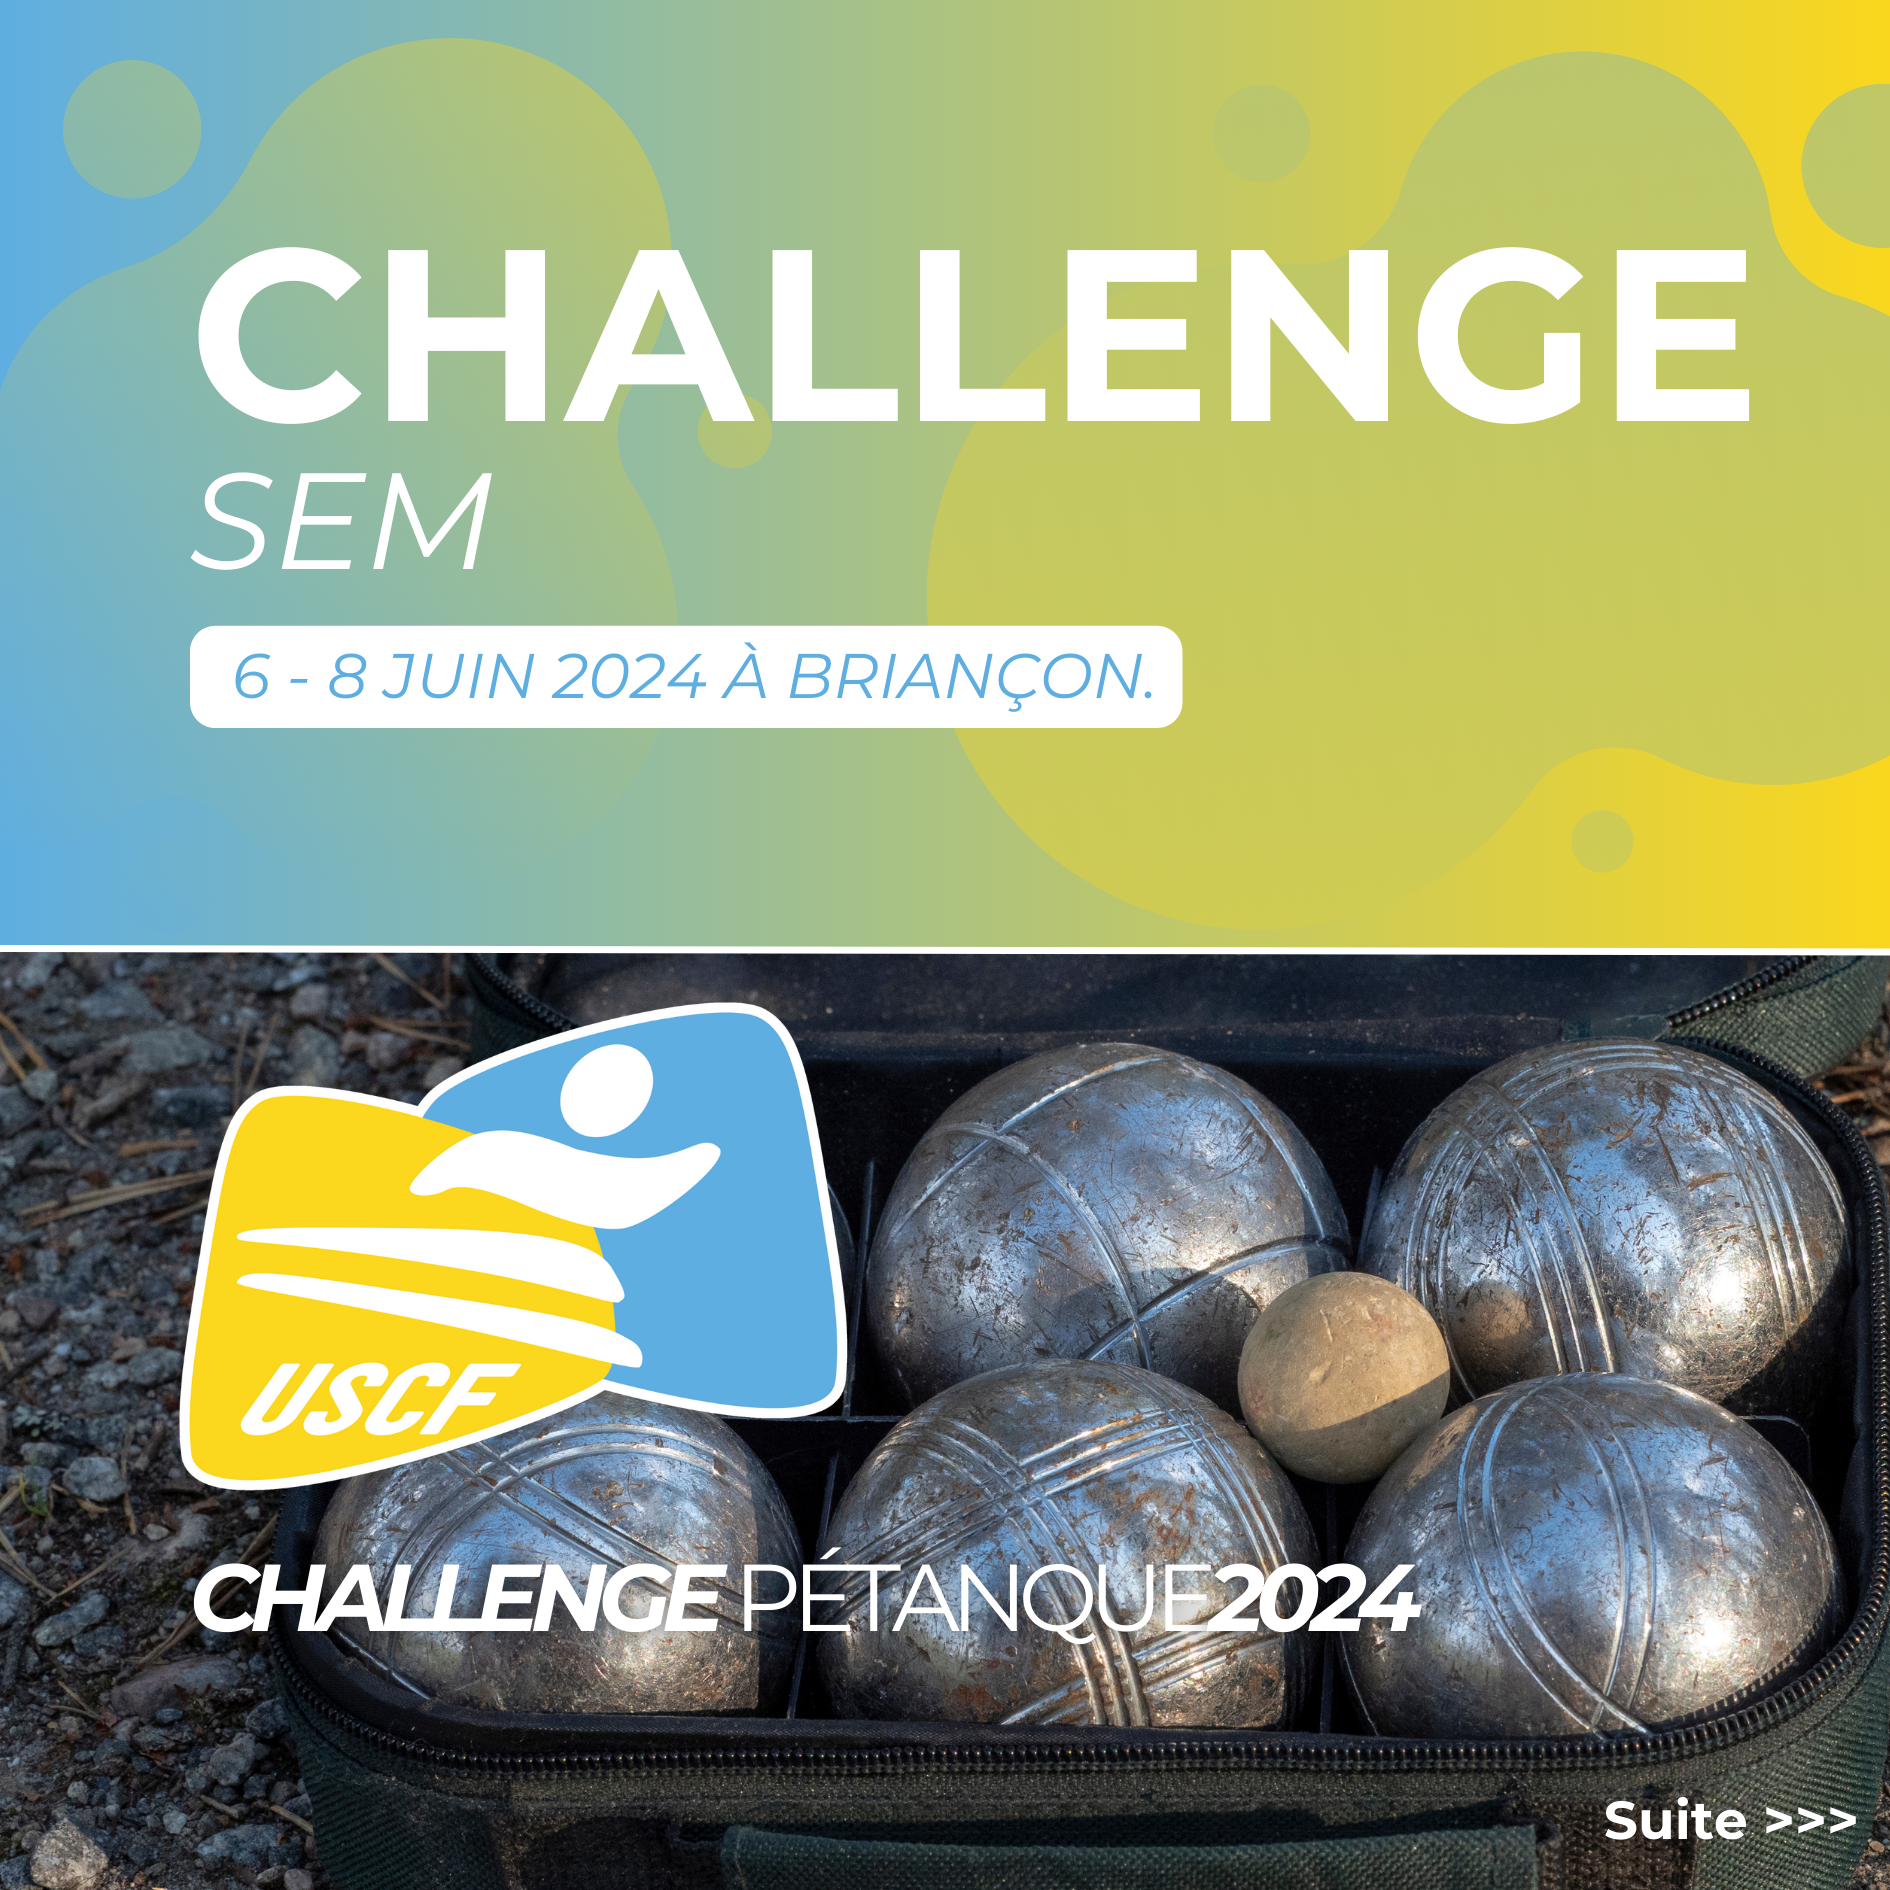 Le challenge SEM Pétanque s'est déroulé du 6 au 8 Juin 2024 à Briançon.